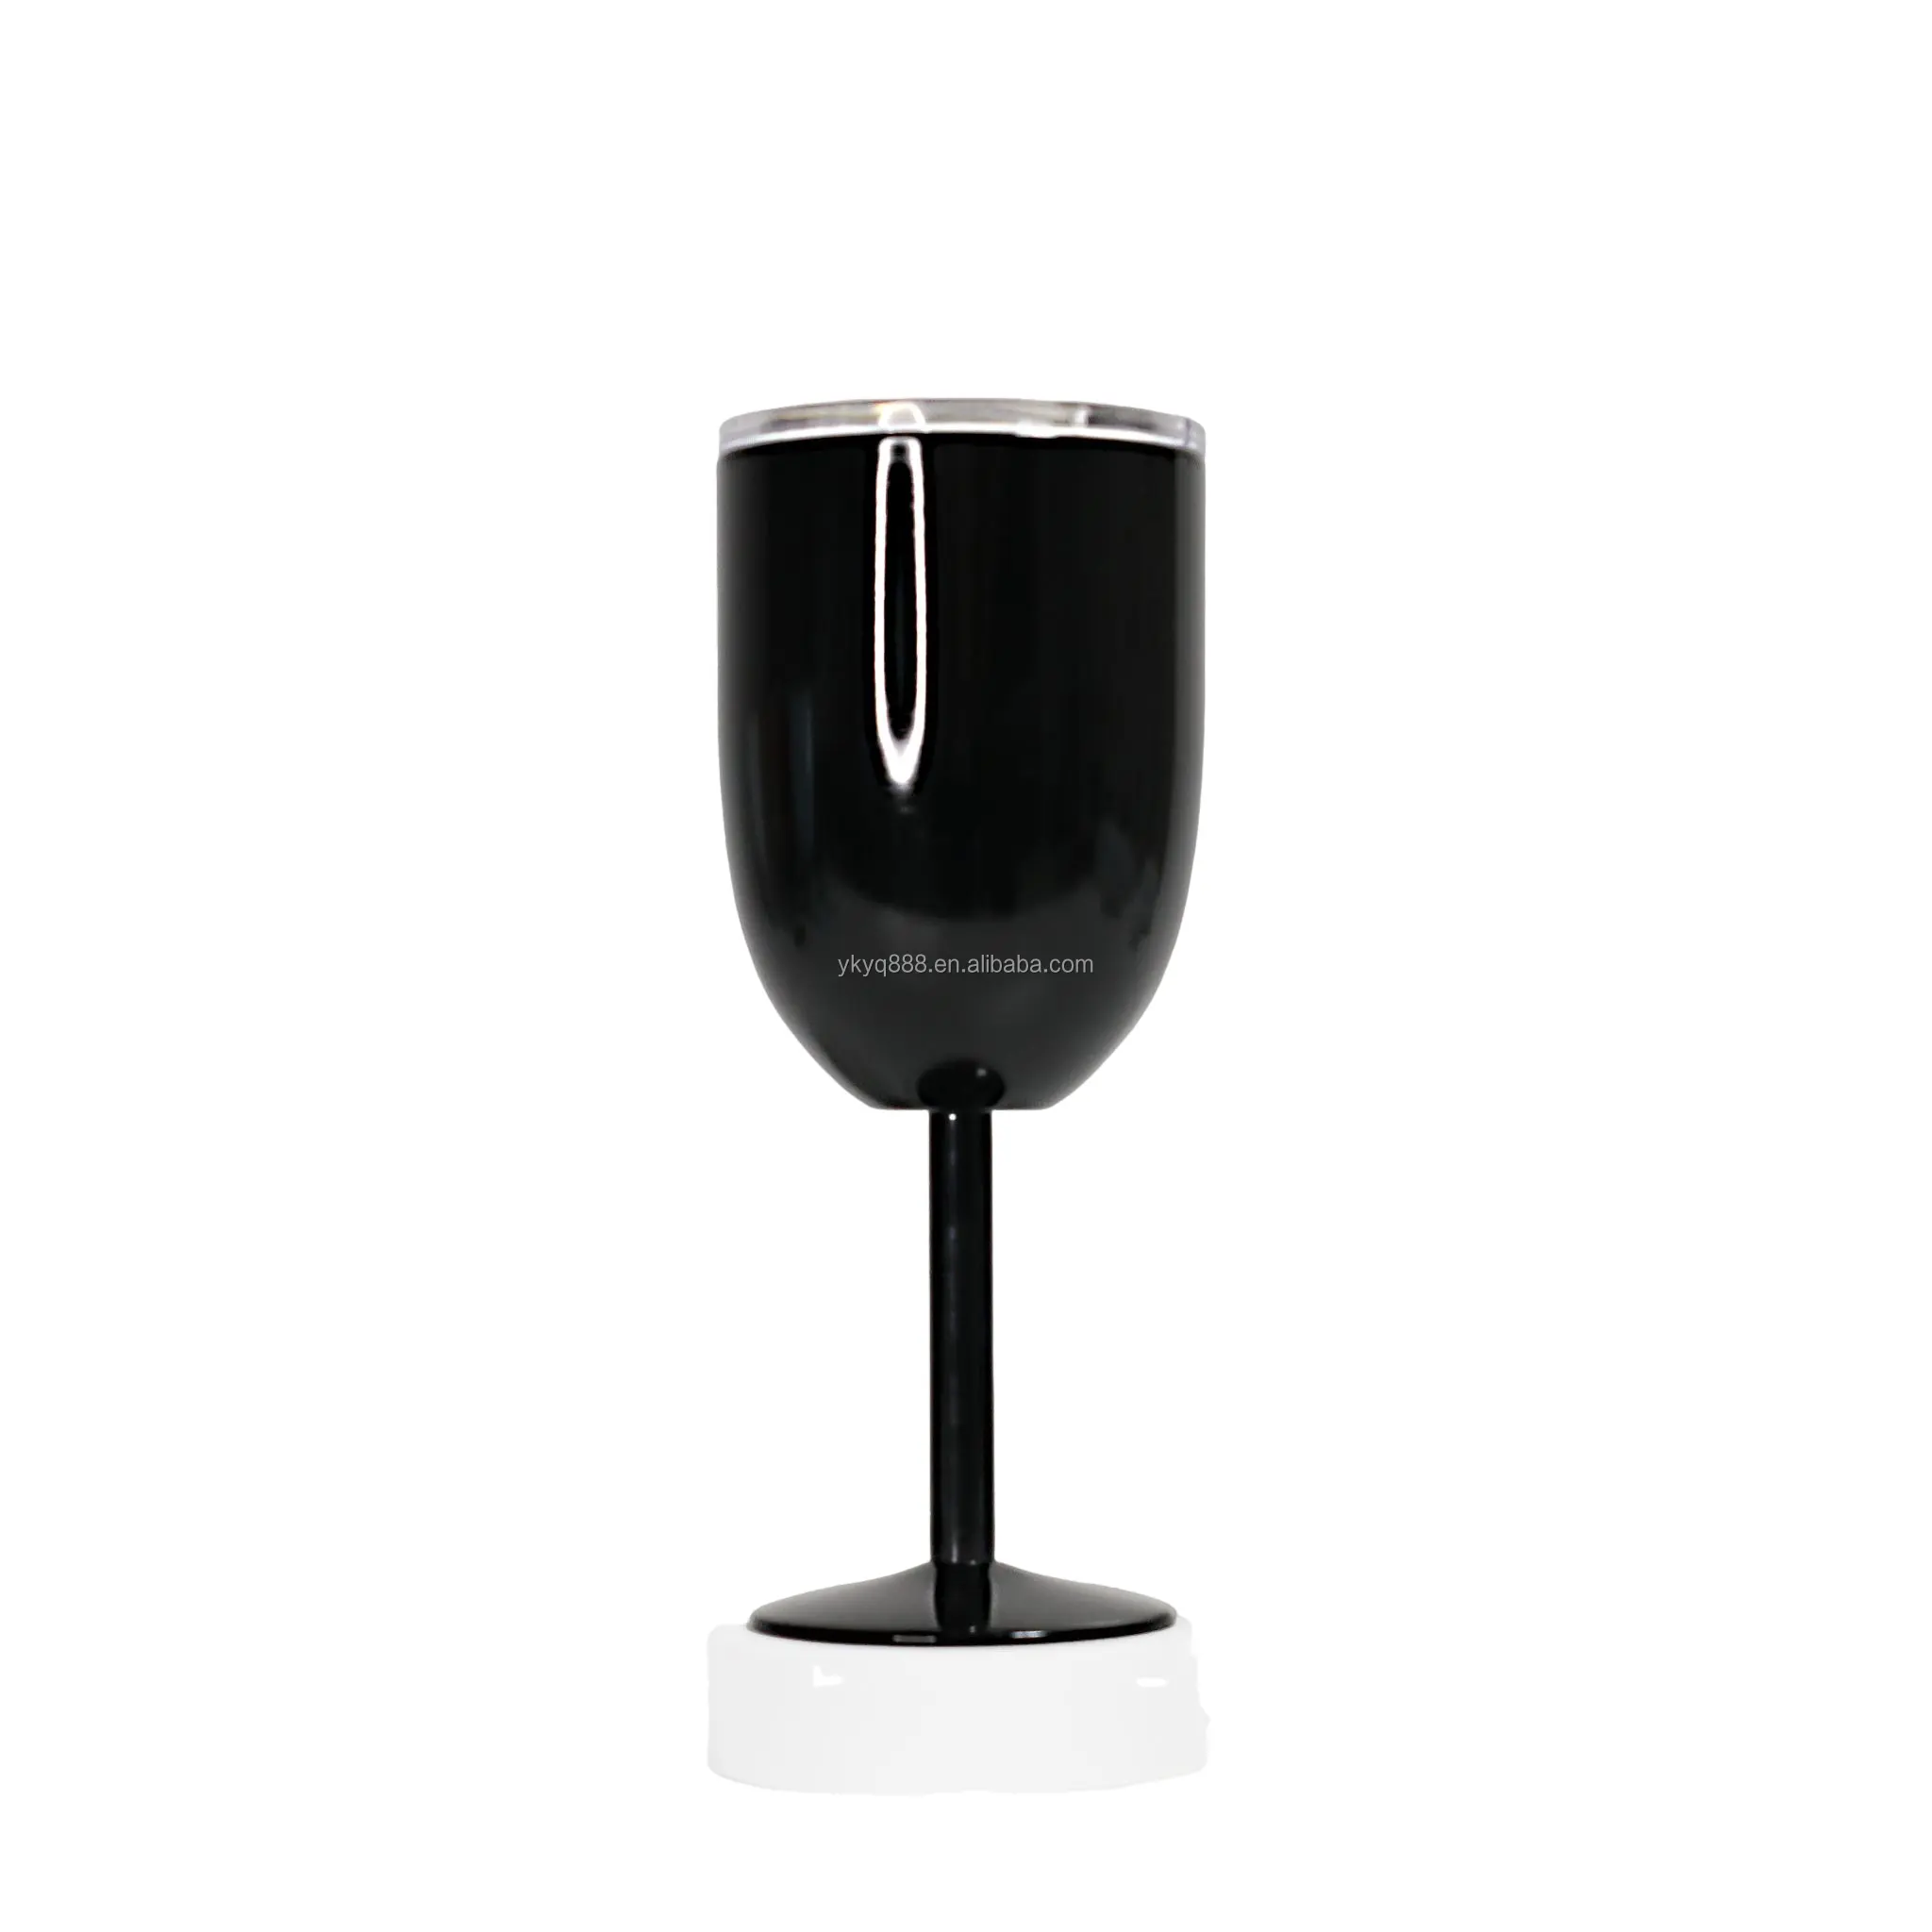 깨지지 않는 10 온스 Goblets 레드 와인 유리 잔 뚜껑 웨딩 파티 맥주 와인 텀블러 스테인레스 스틸 블랙 와인 안경